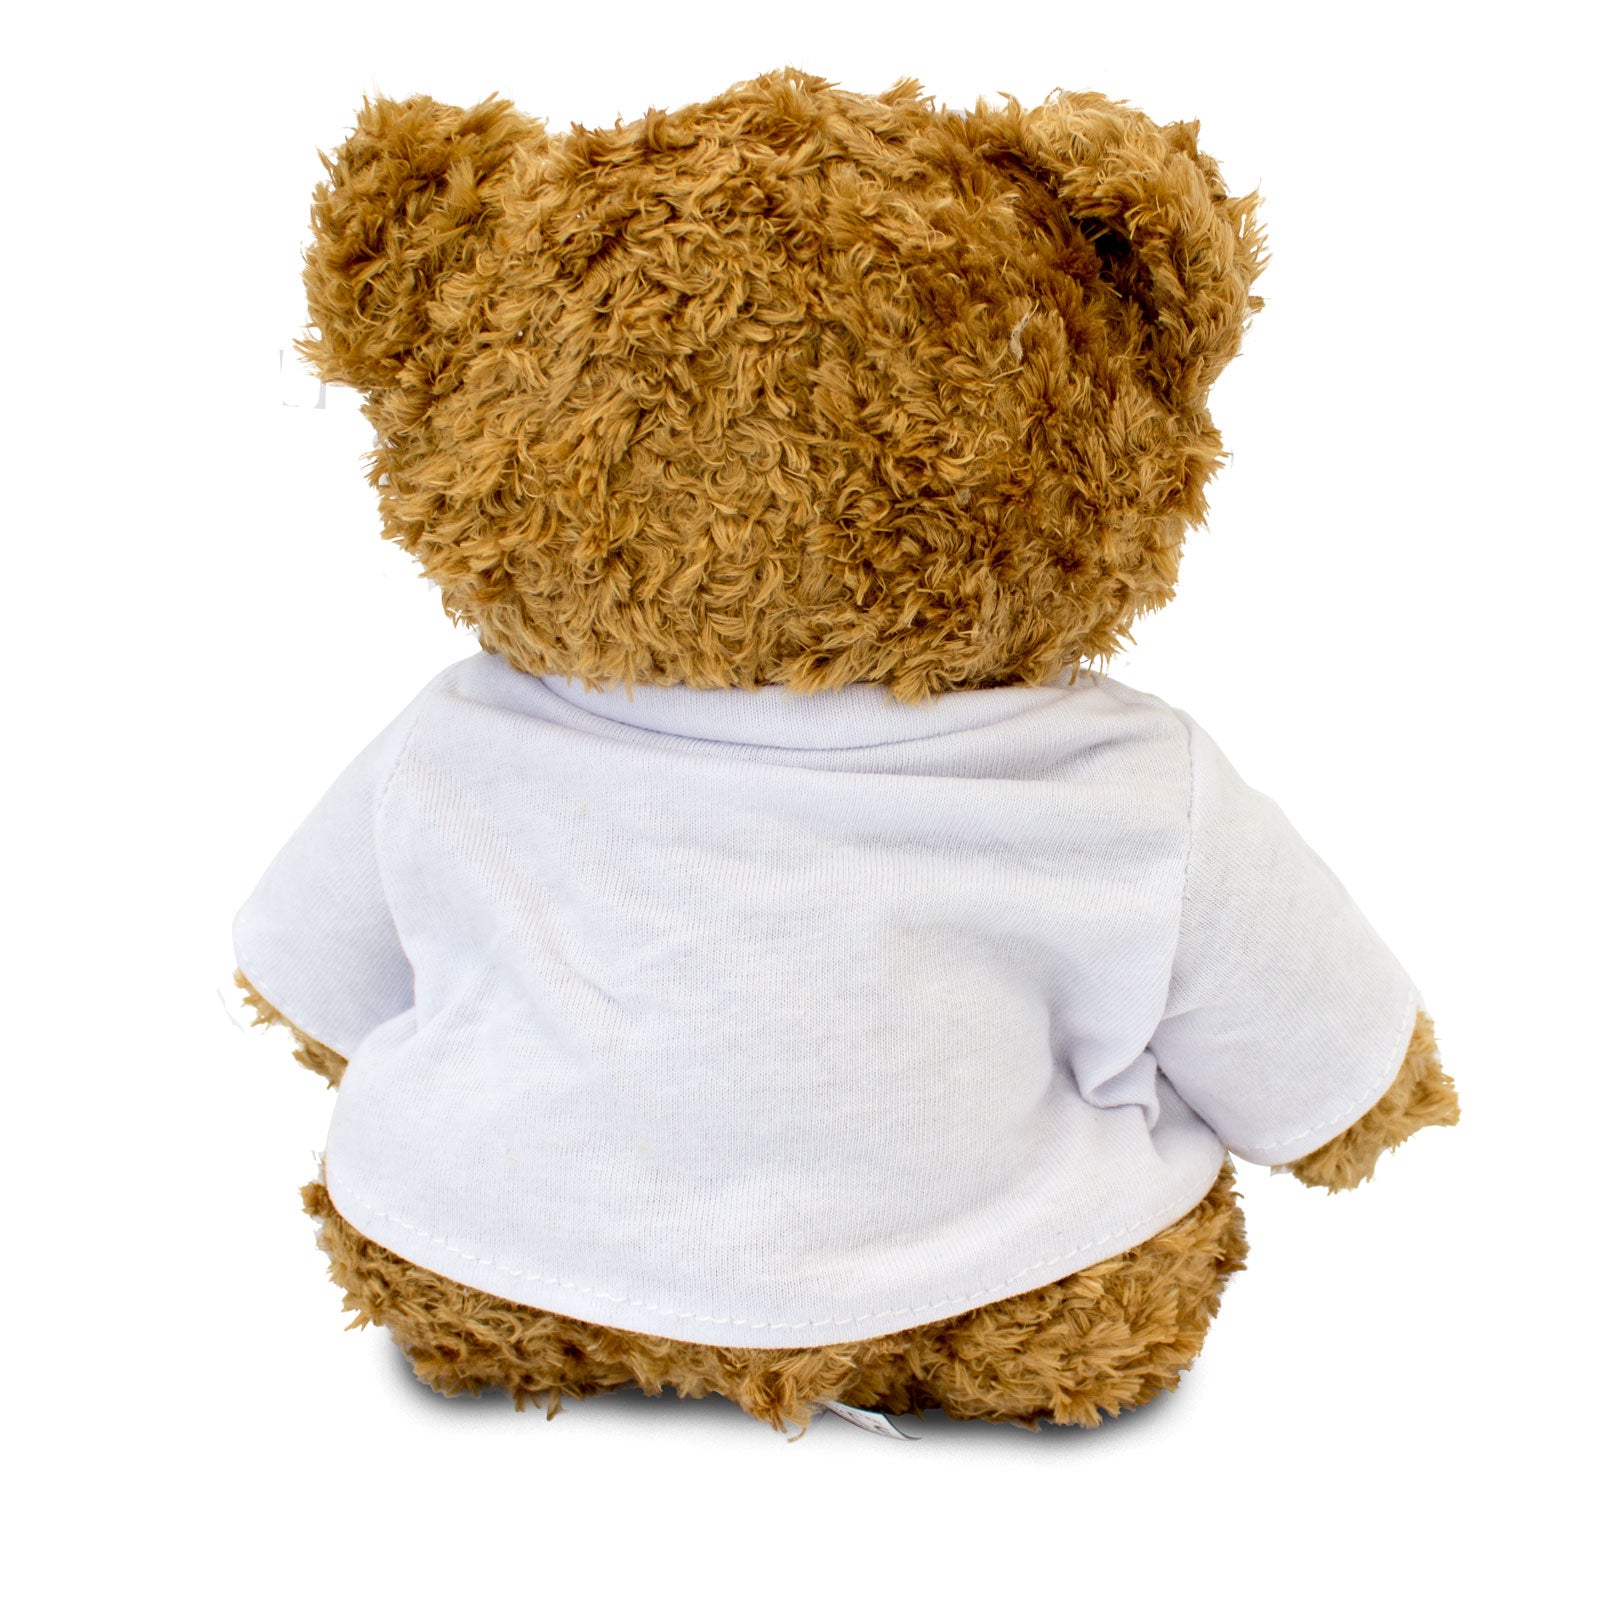 Get Well Soon Helena - Teddy Bear